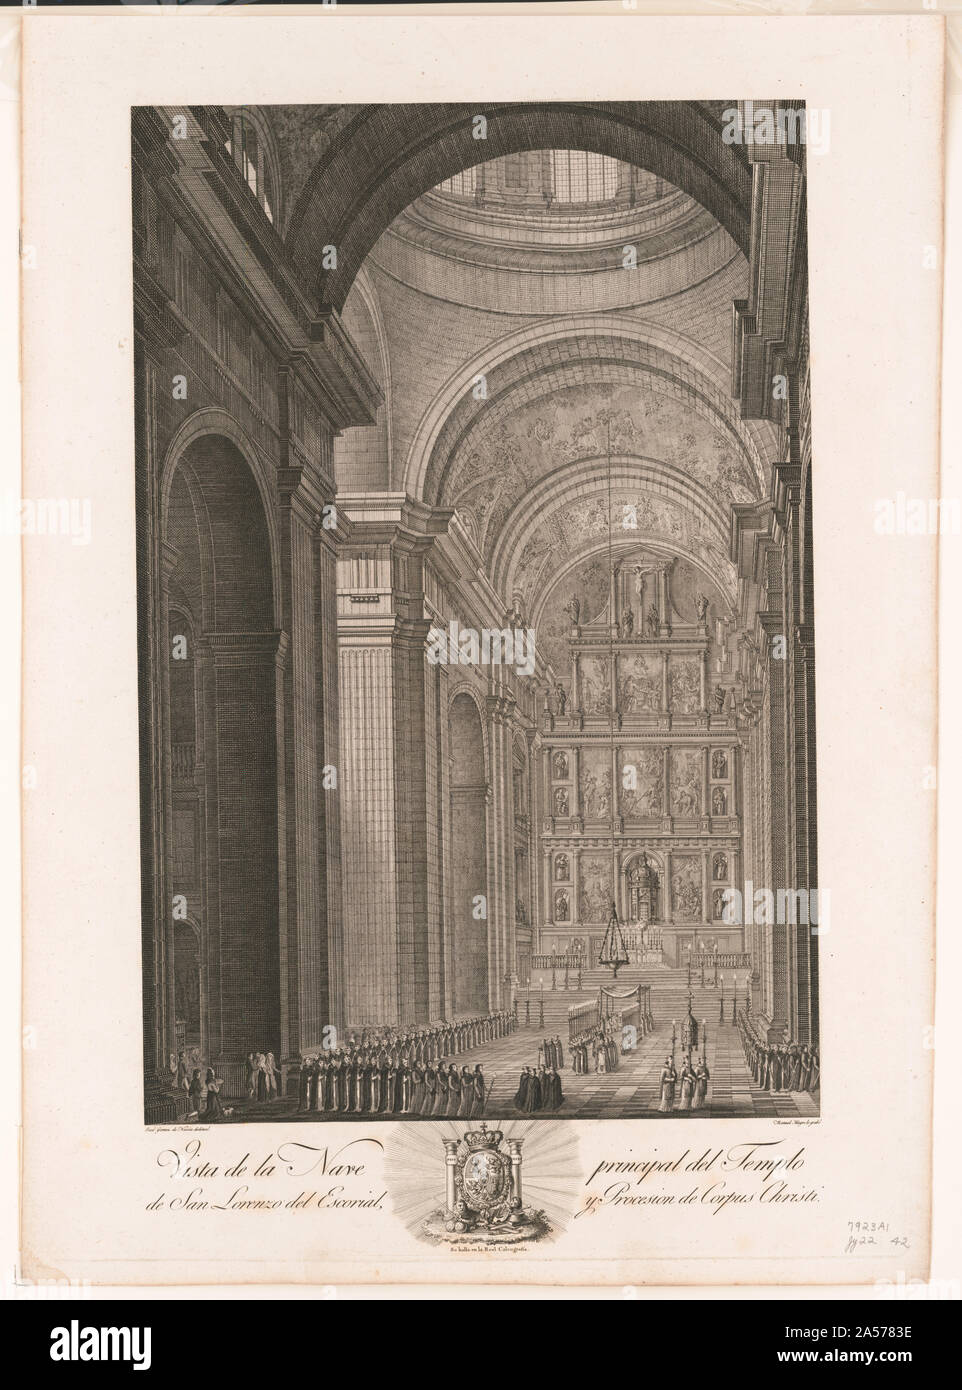 Vista de la nave Principal del Templo de San Lorenzo del Escorial, y procesion de Corpus Christi Stockfoto